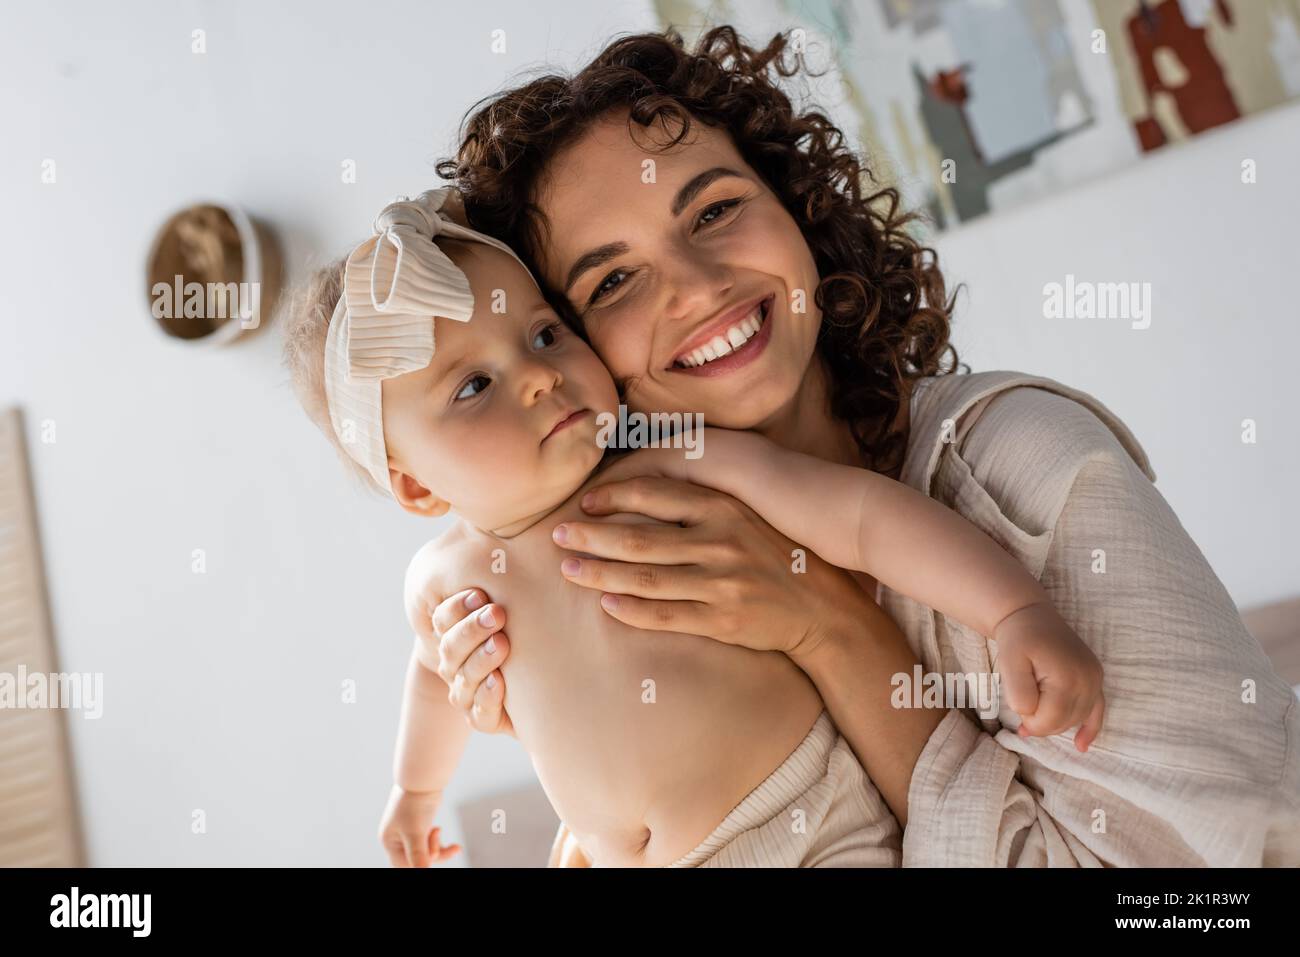 une mère en forme de couvre-lit en souriant tout en embrassant une petite fille dans un serre-tête, image de stock Banque D'Images